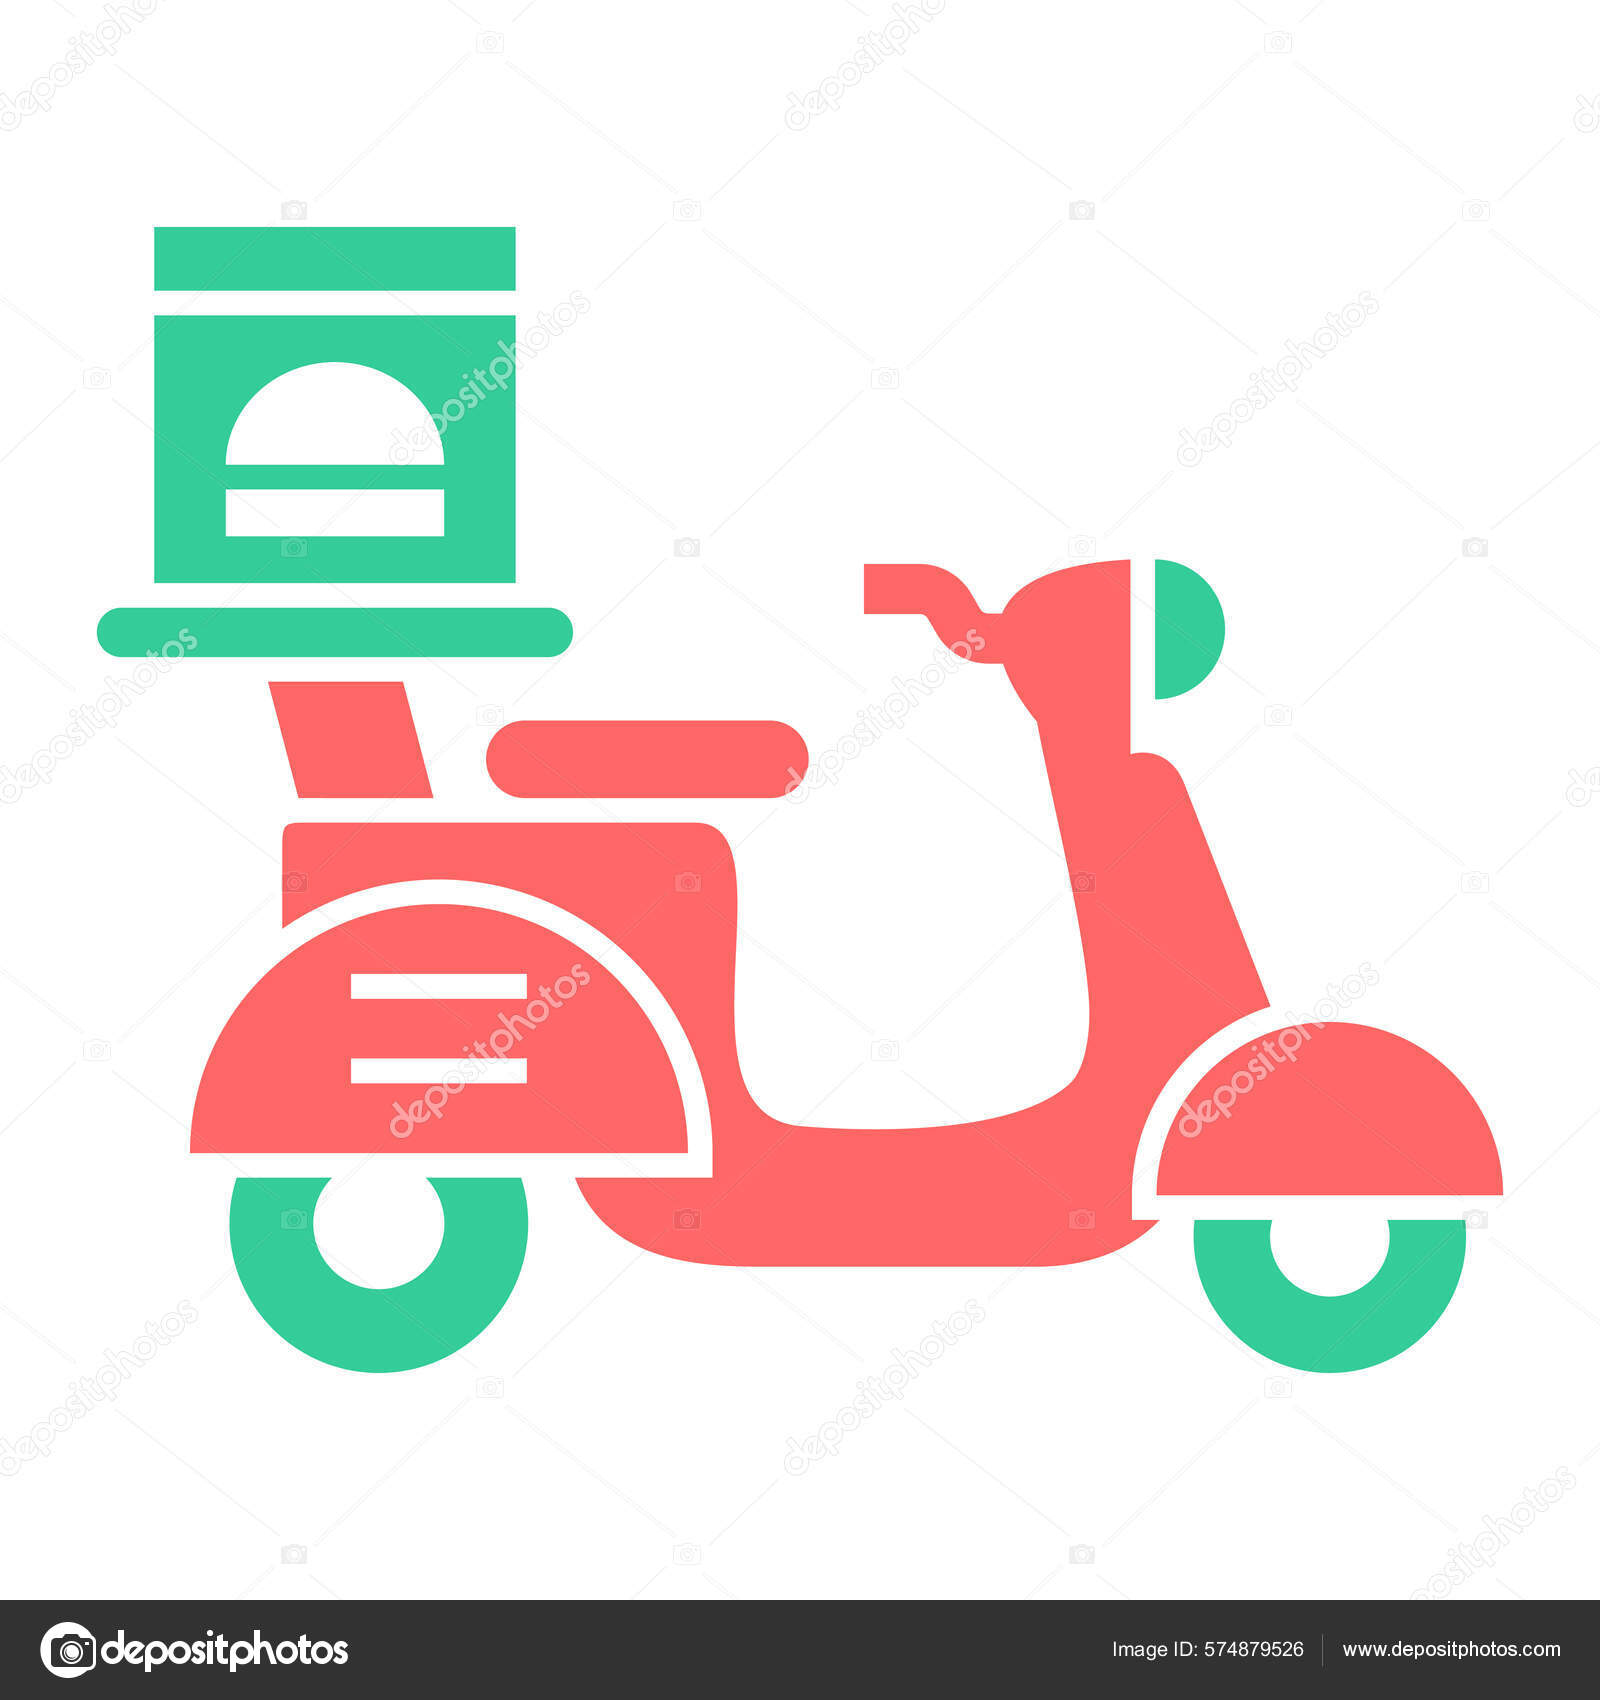 Ciclomotor de moto vespa bonito cor verde. conceito de objeto dos desenhos  animados ilustração isolada. estilo simples adequado para vetor de logotipo  premium de design de ícone de adesivo